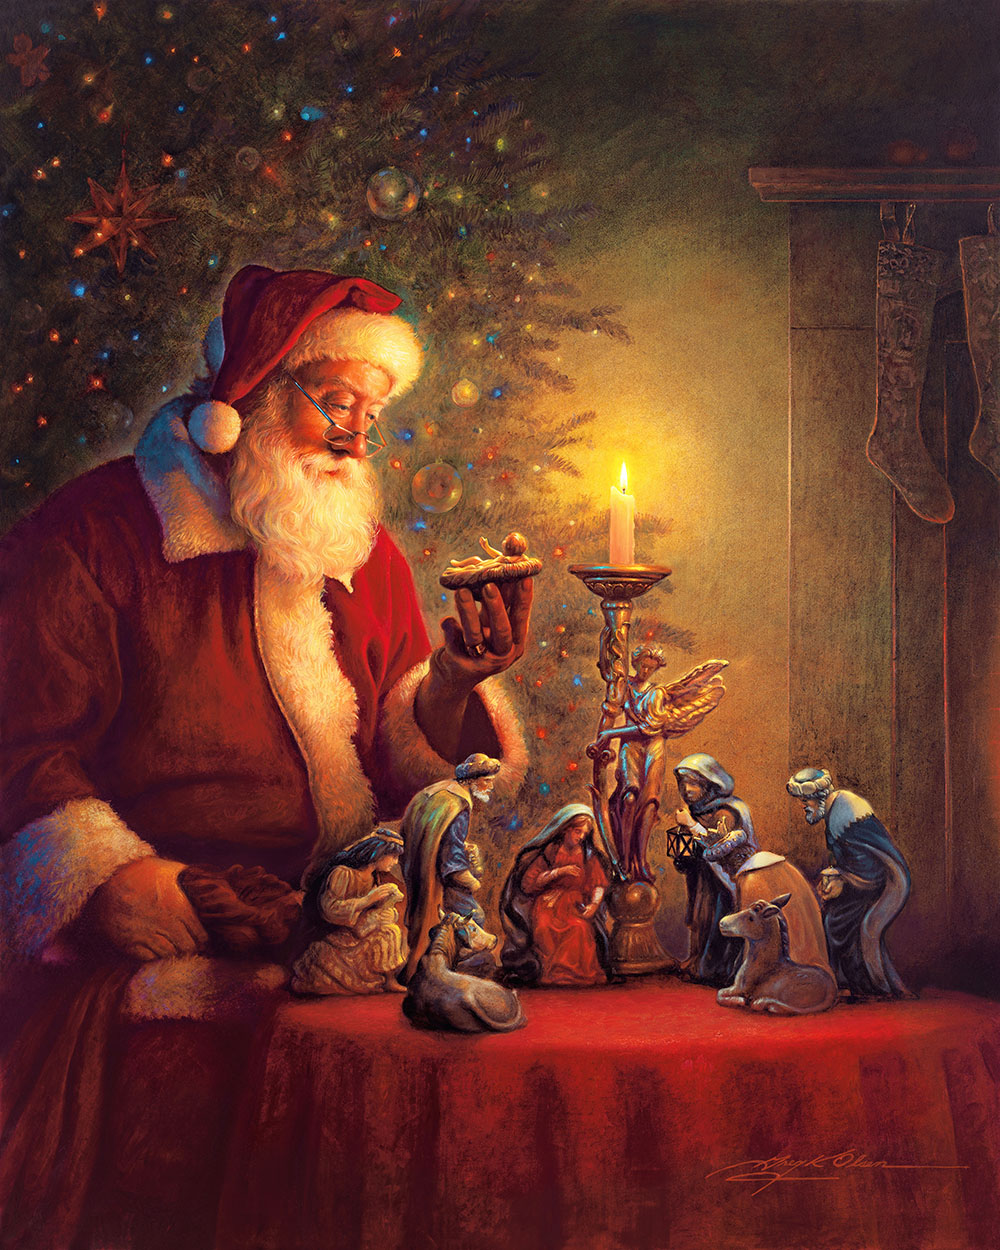 The Spirit Of Christmas by Greg Olsen